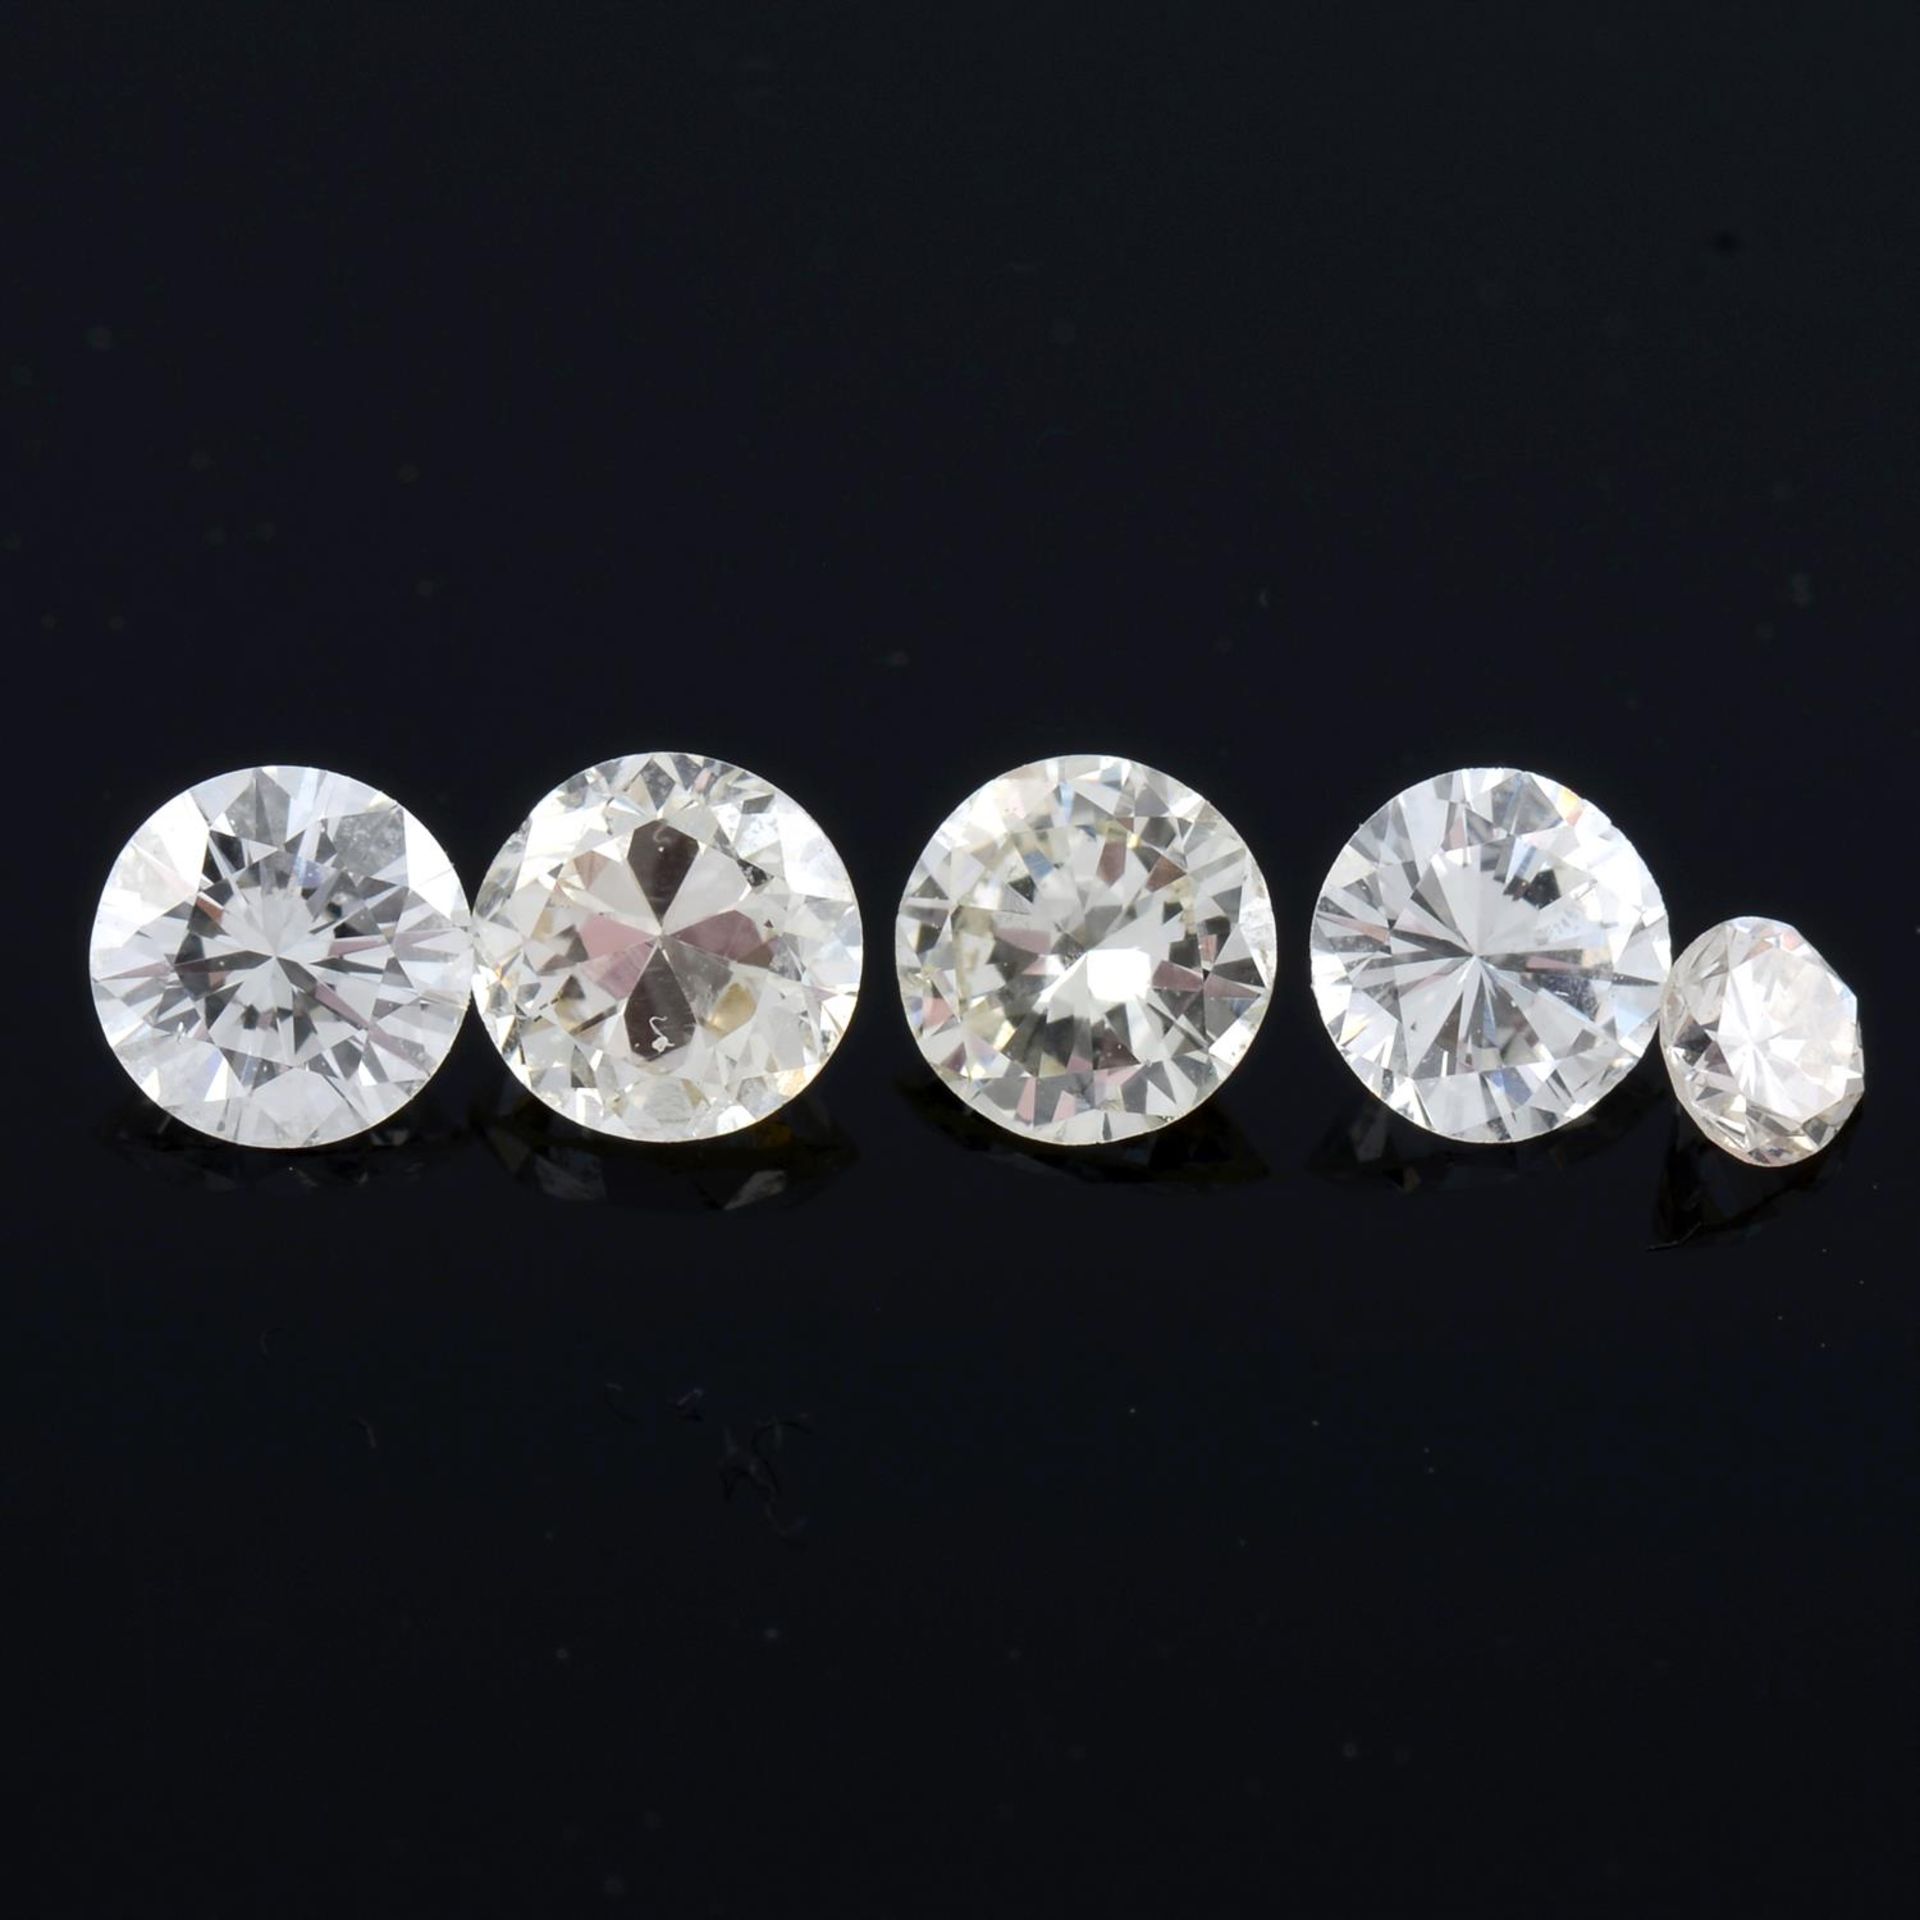 Five brilliant-cut diamonds, 0.57ct